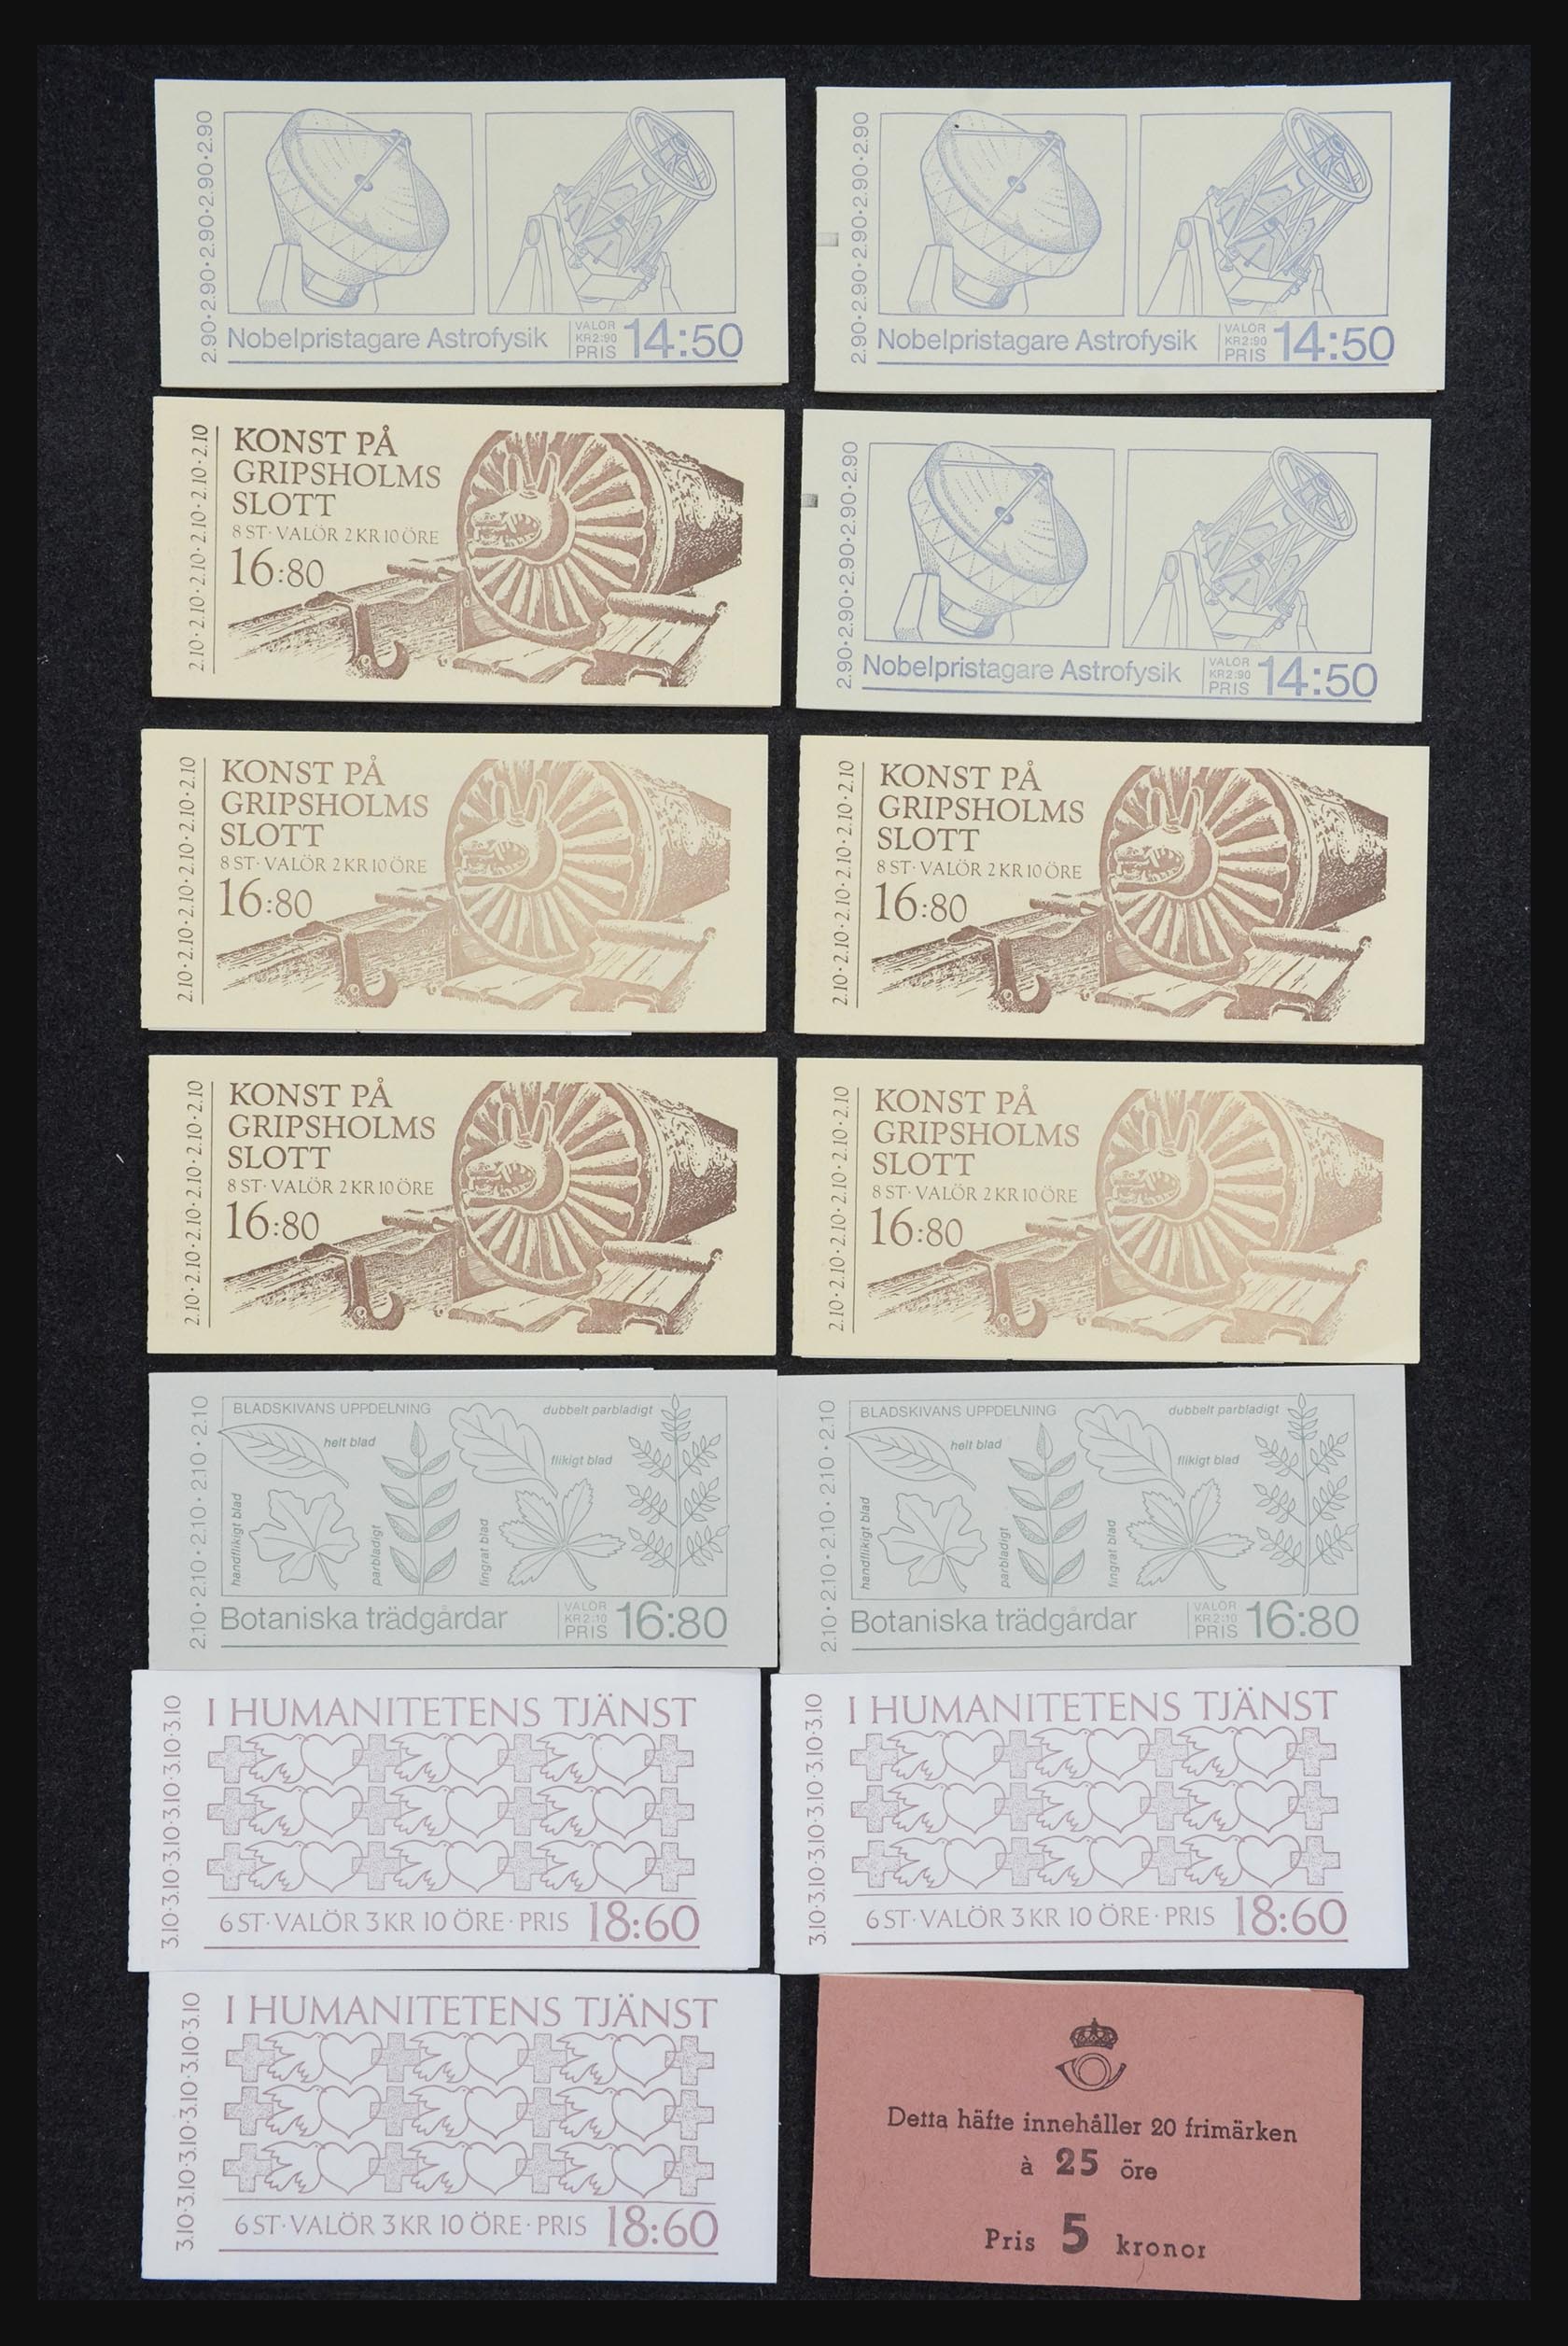 32026 034 - 32026 Sweden stampbooklets 1949-1990.